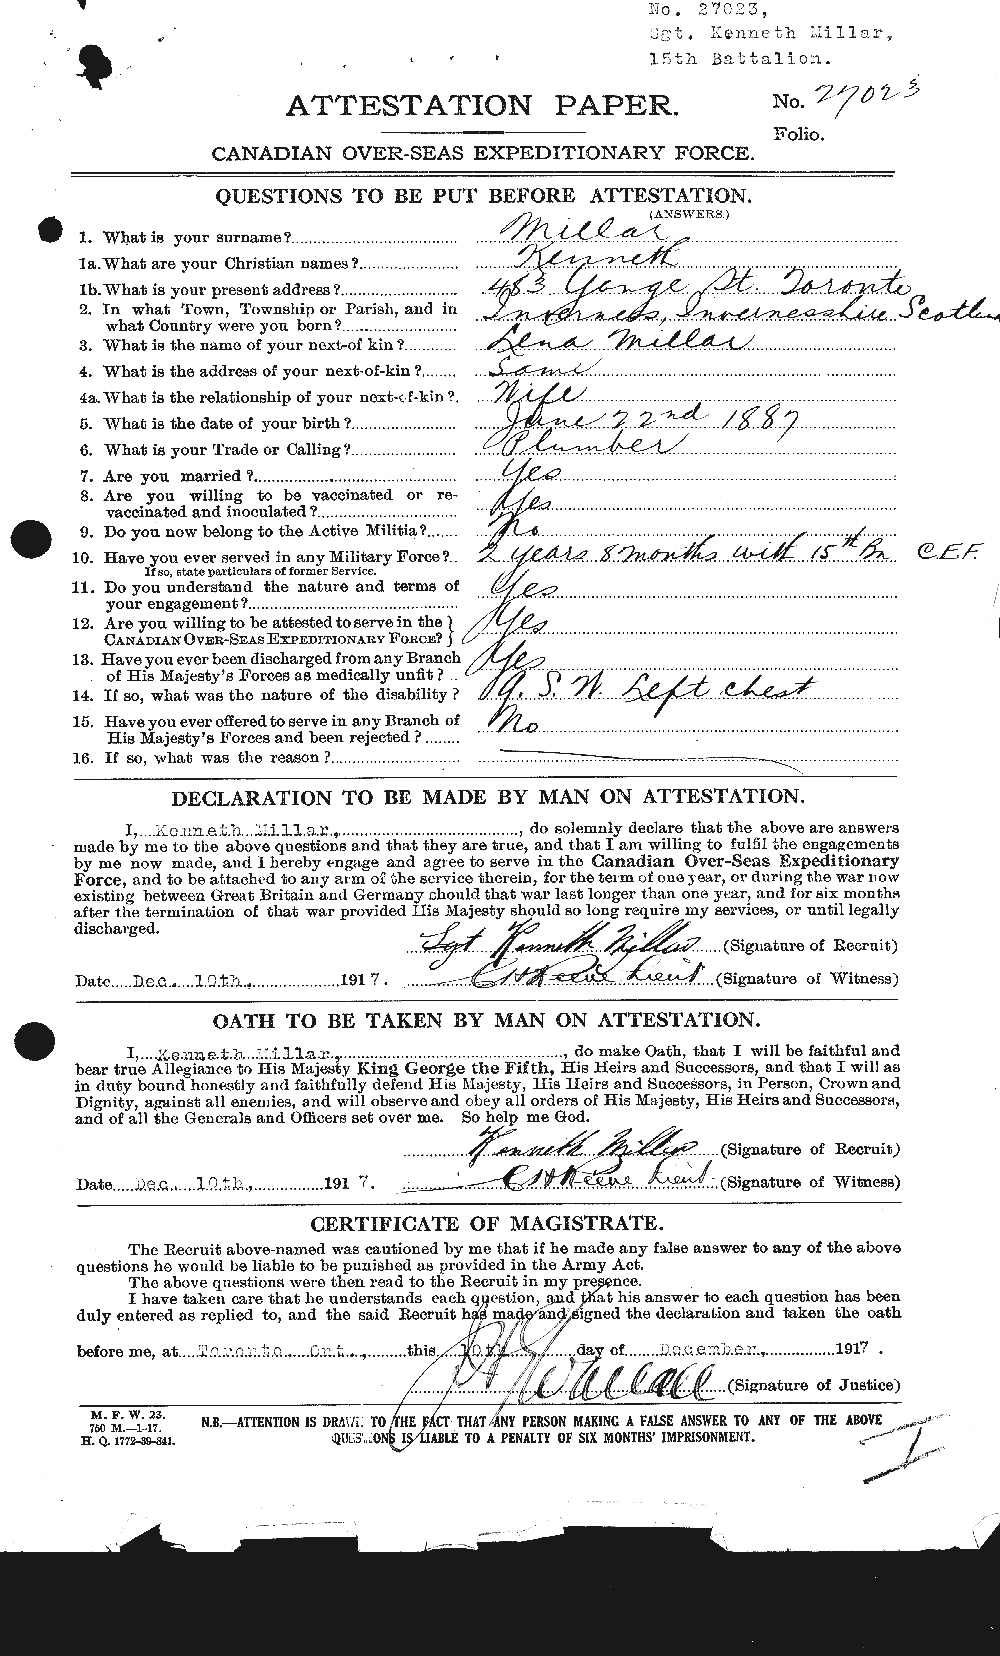 Dossiers du Personnel de la Première Guerre mondiale - CEC 495335a